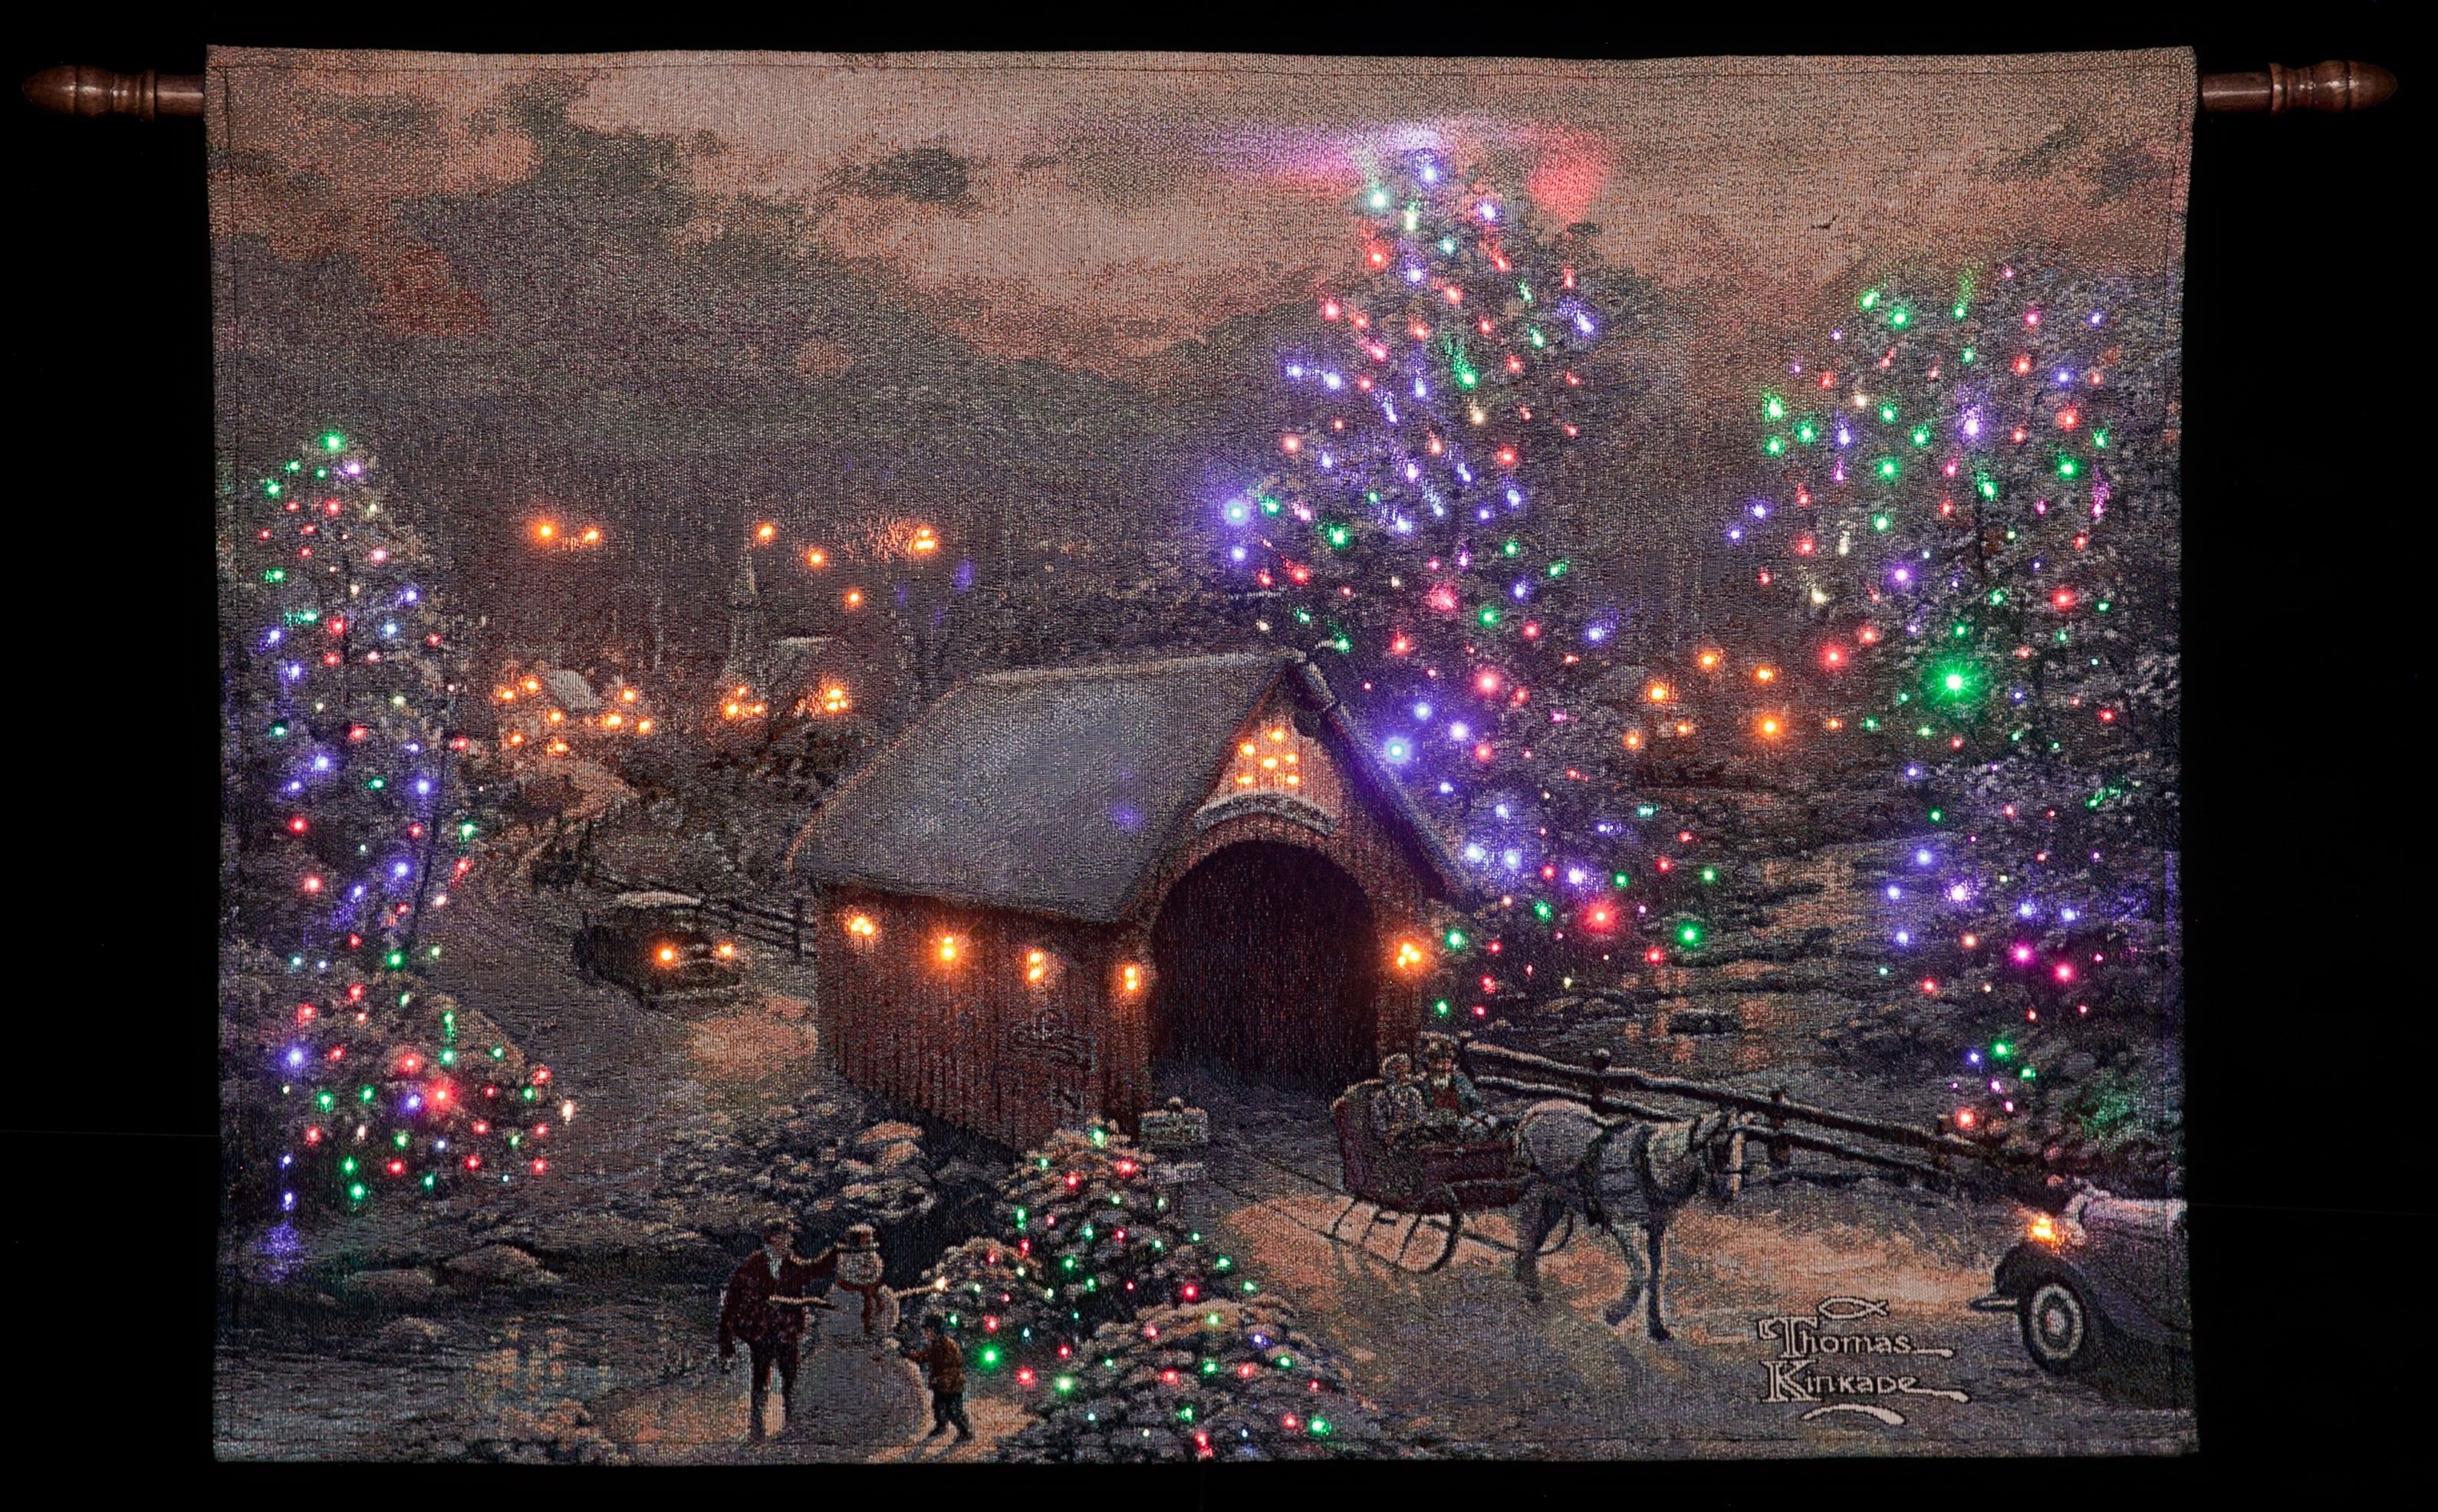 Hãy khiến bầu không khí Giáng Sinh của bạn trở nên thật ấm áp với hình nền Giáng Sinh Thomas Kinkade. Hình ảnh lấy cảm hứng từ đêm Noel thật sự sẽ khiến bạn cảm thấy như đang ở trong một bức tranh. Xem ngay!